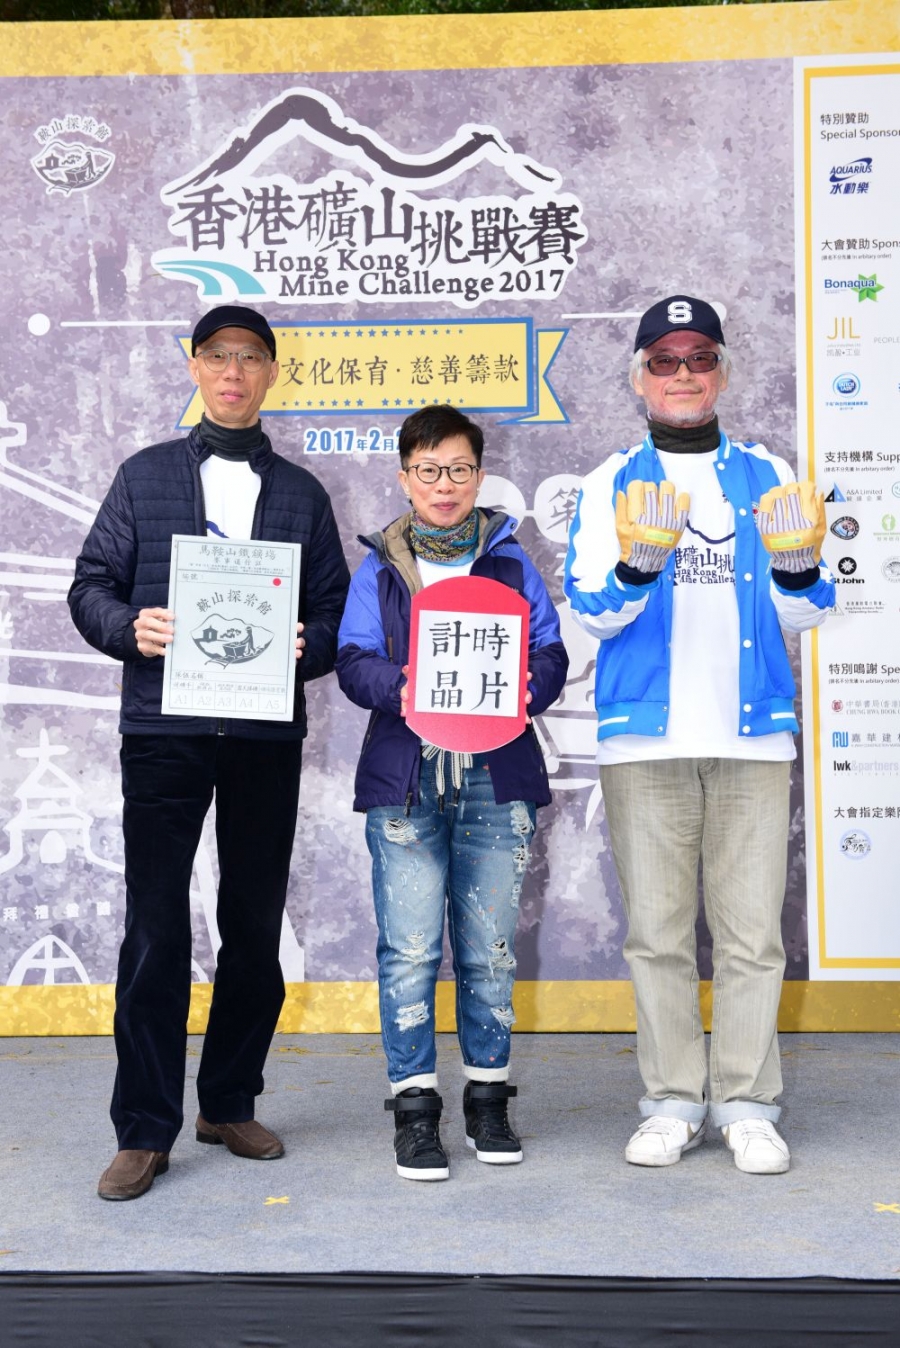 香港矿山挑战赛2017